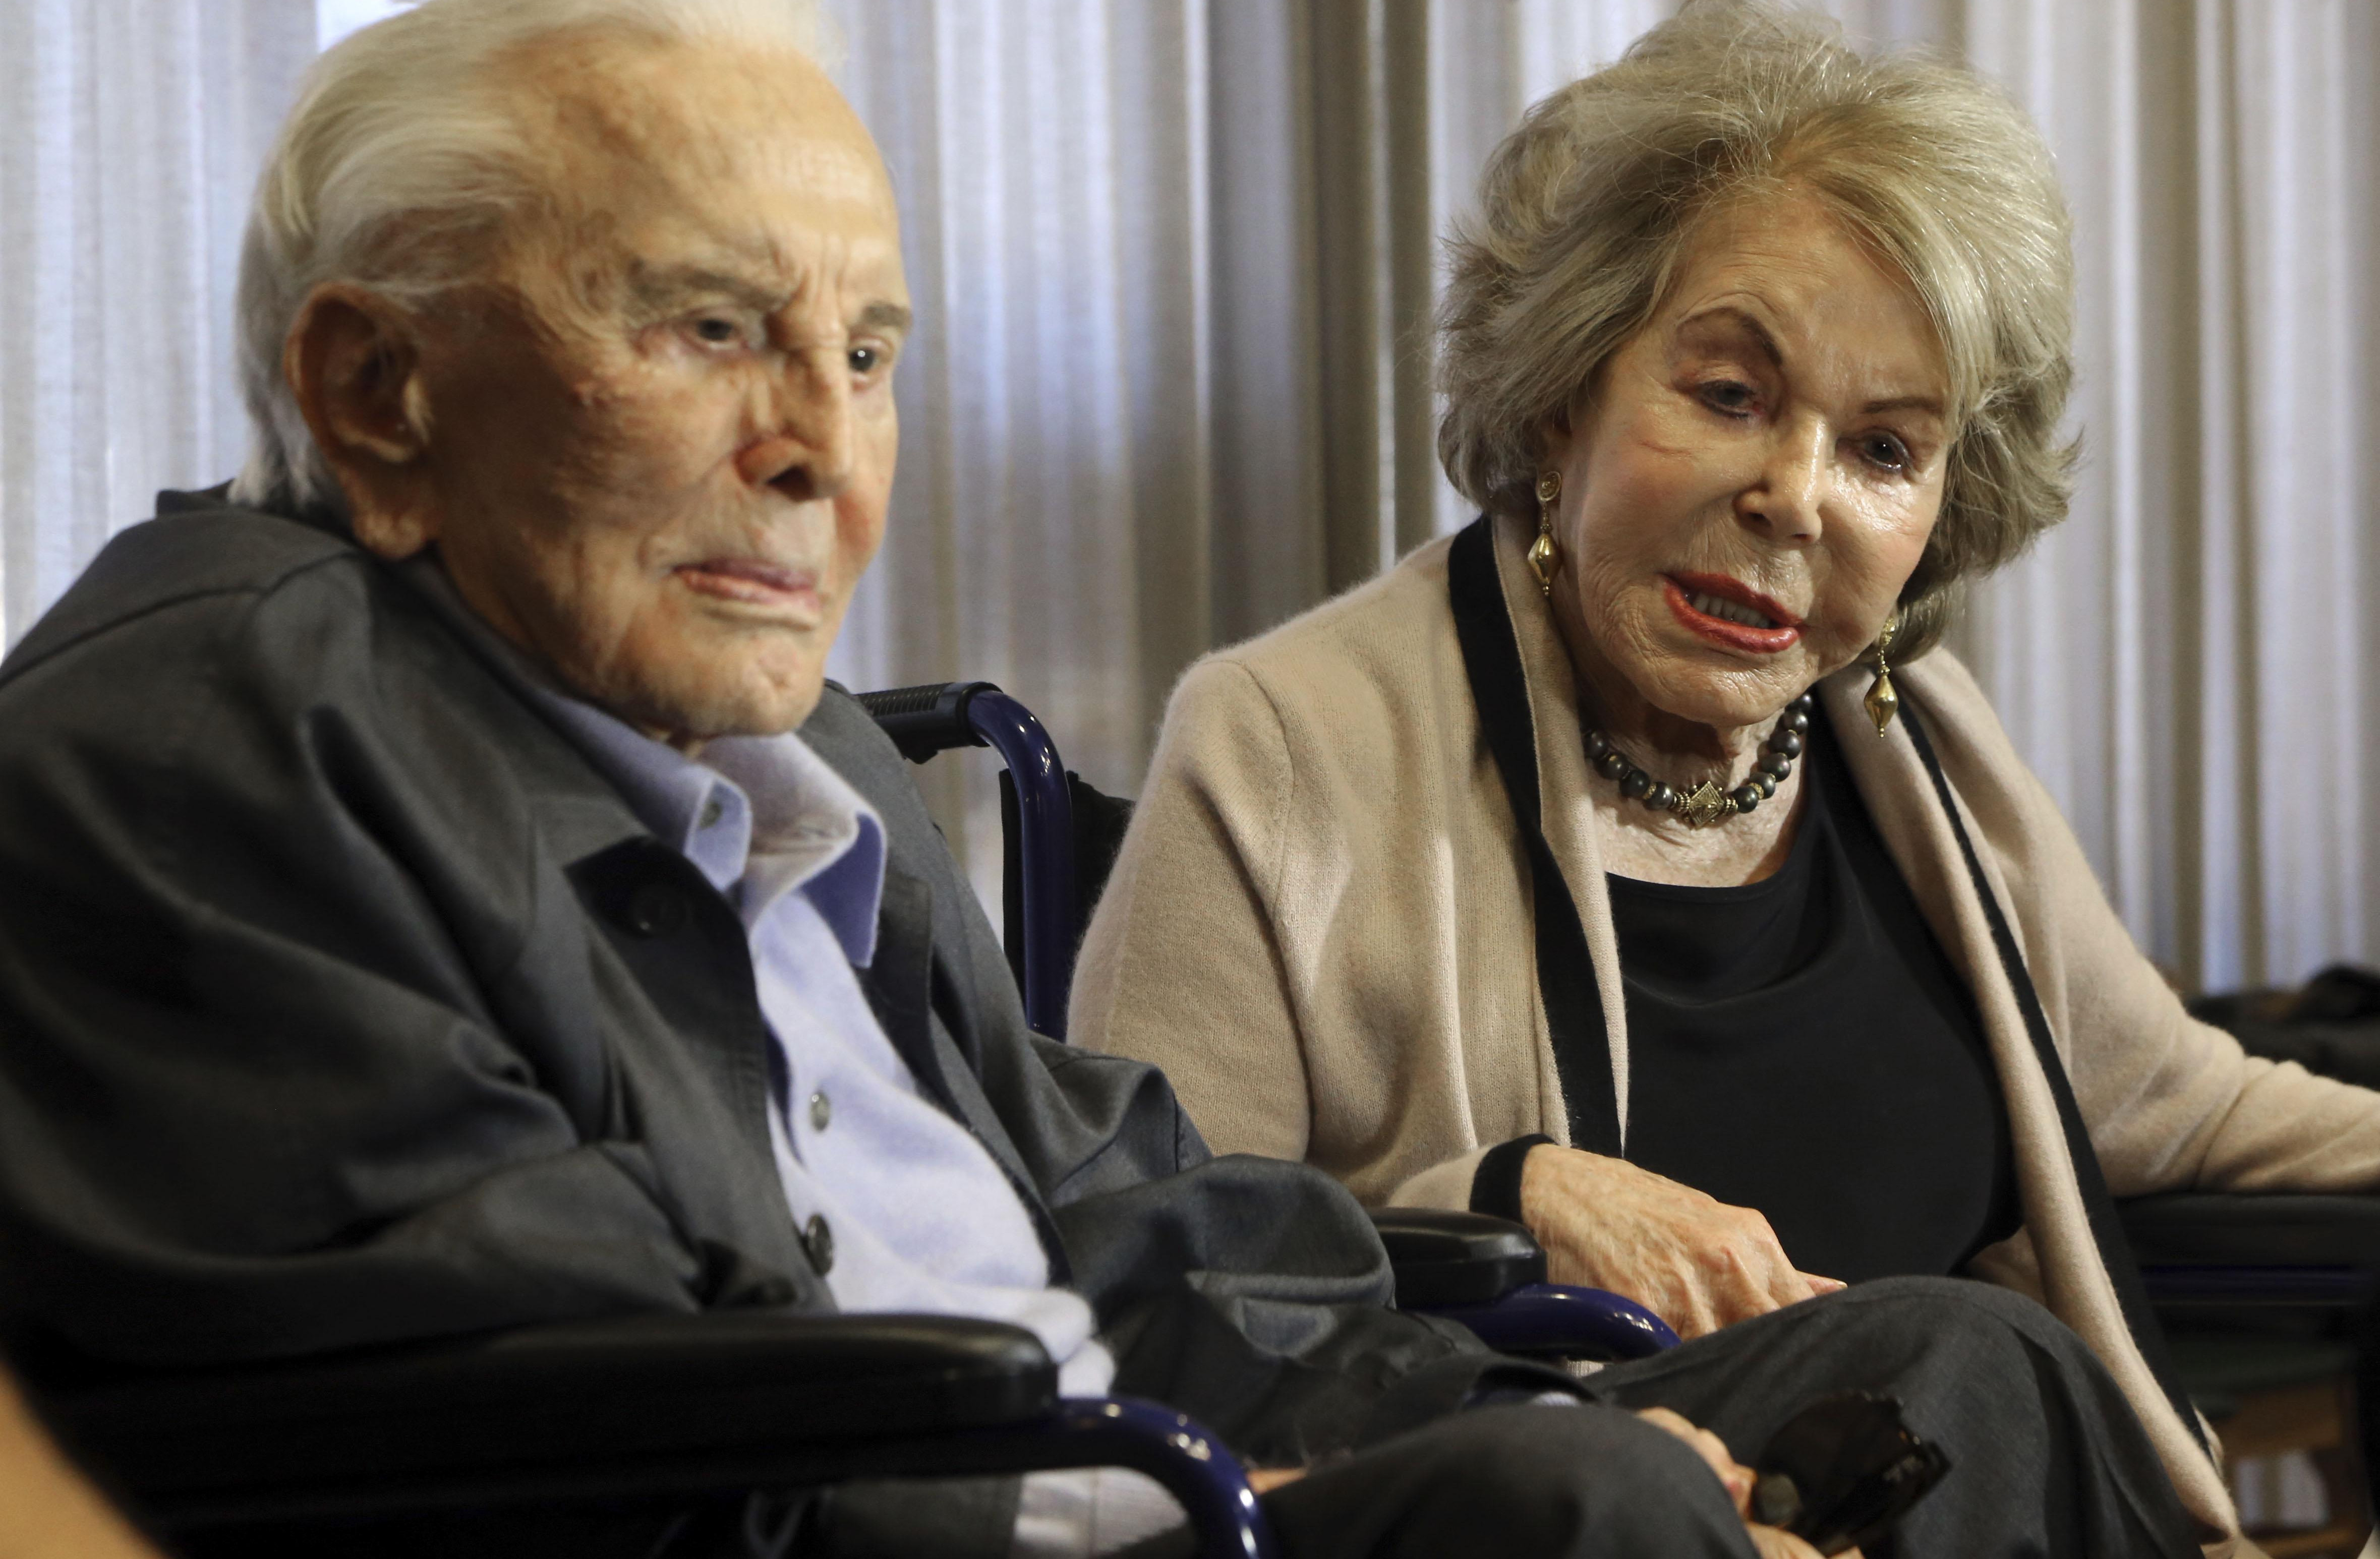 (FOTO) LJUBAV I U INVALIDSKIM KOLICIMA! Kirk Daglas (101) i njegova supruga (99)  i dalje nerazdvojni